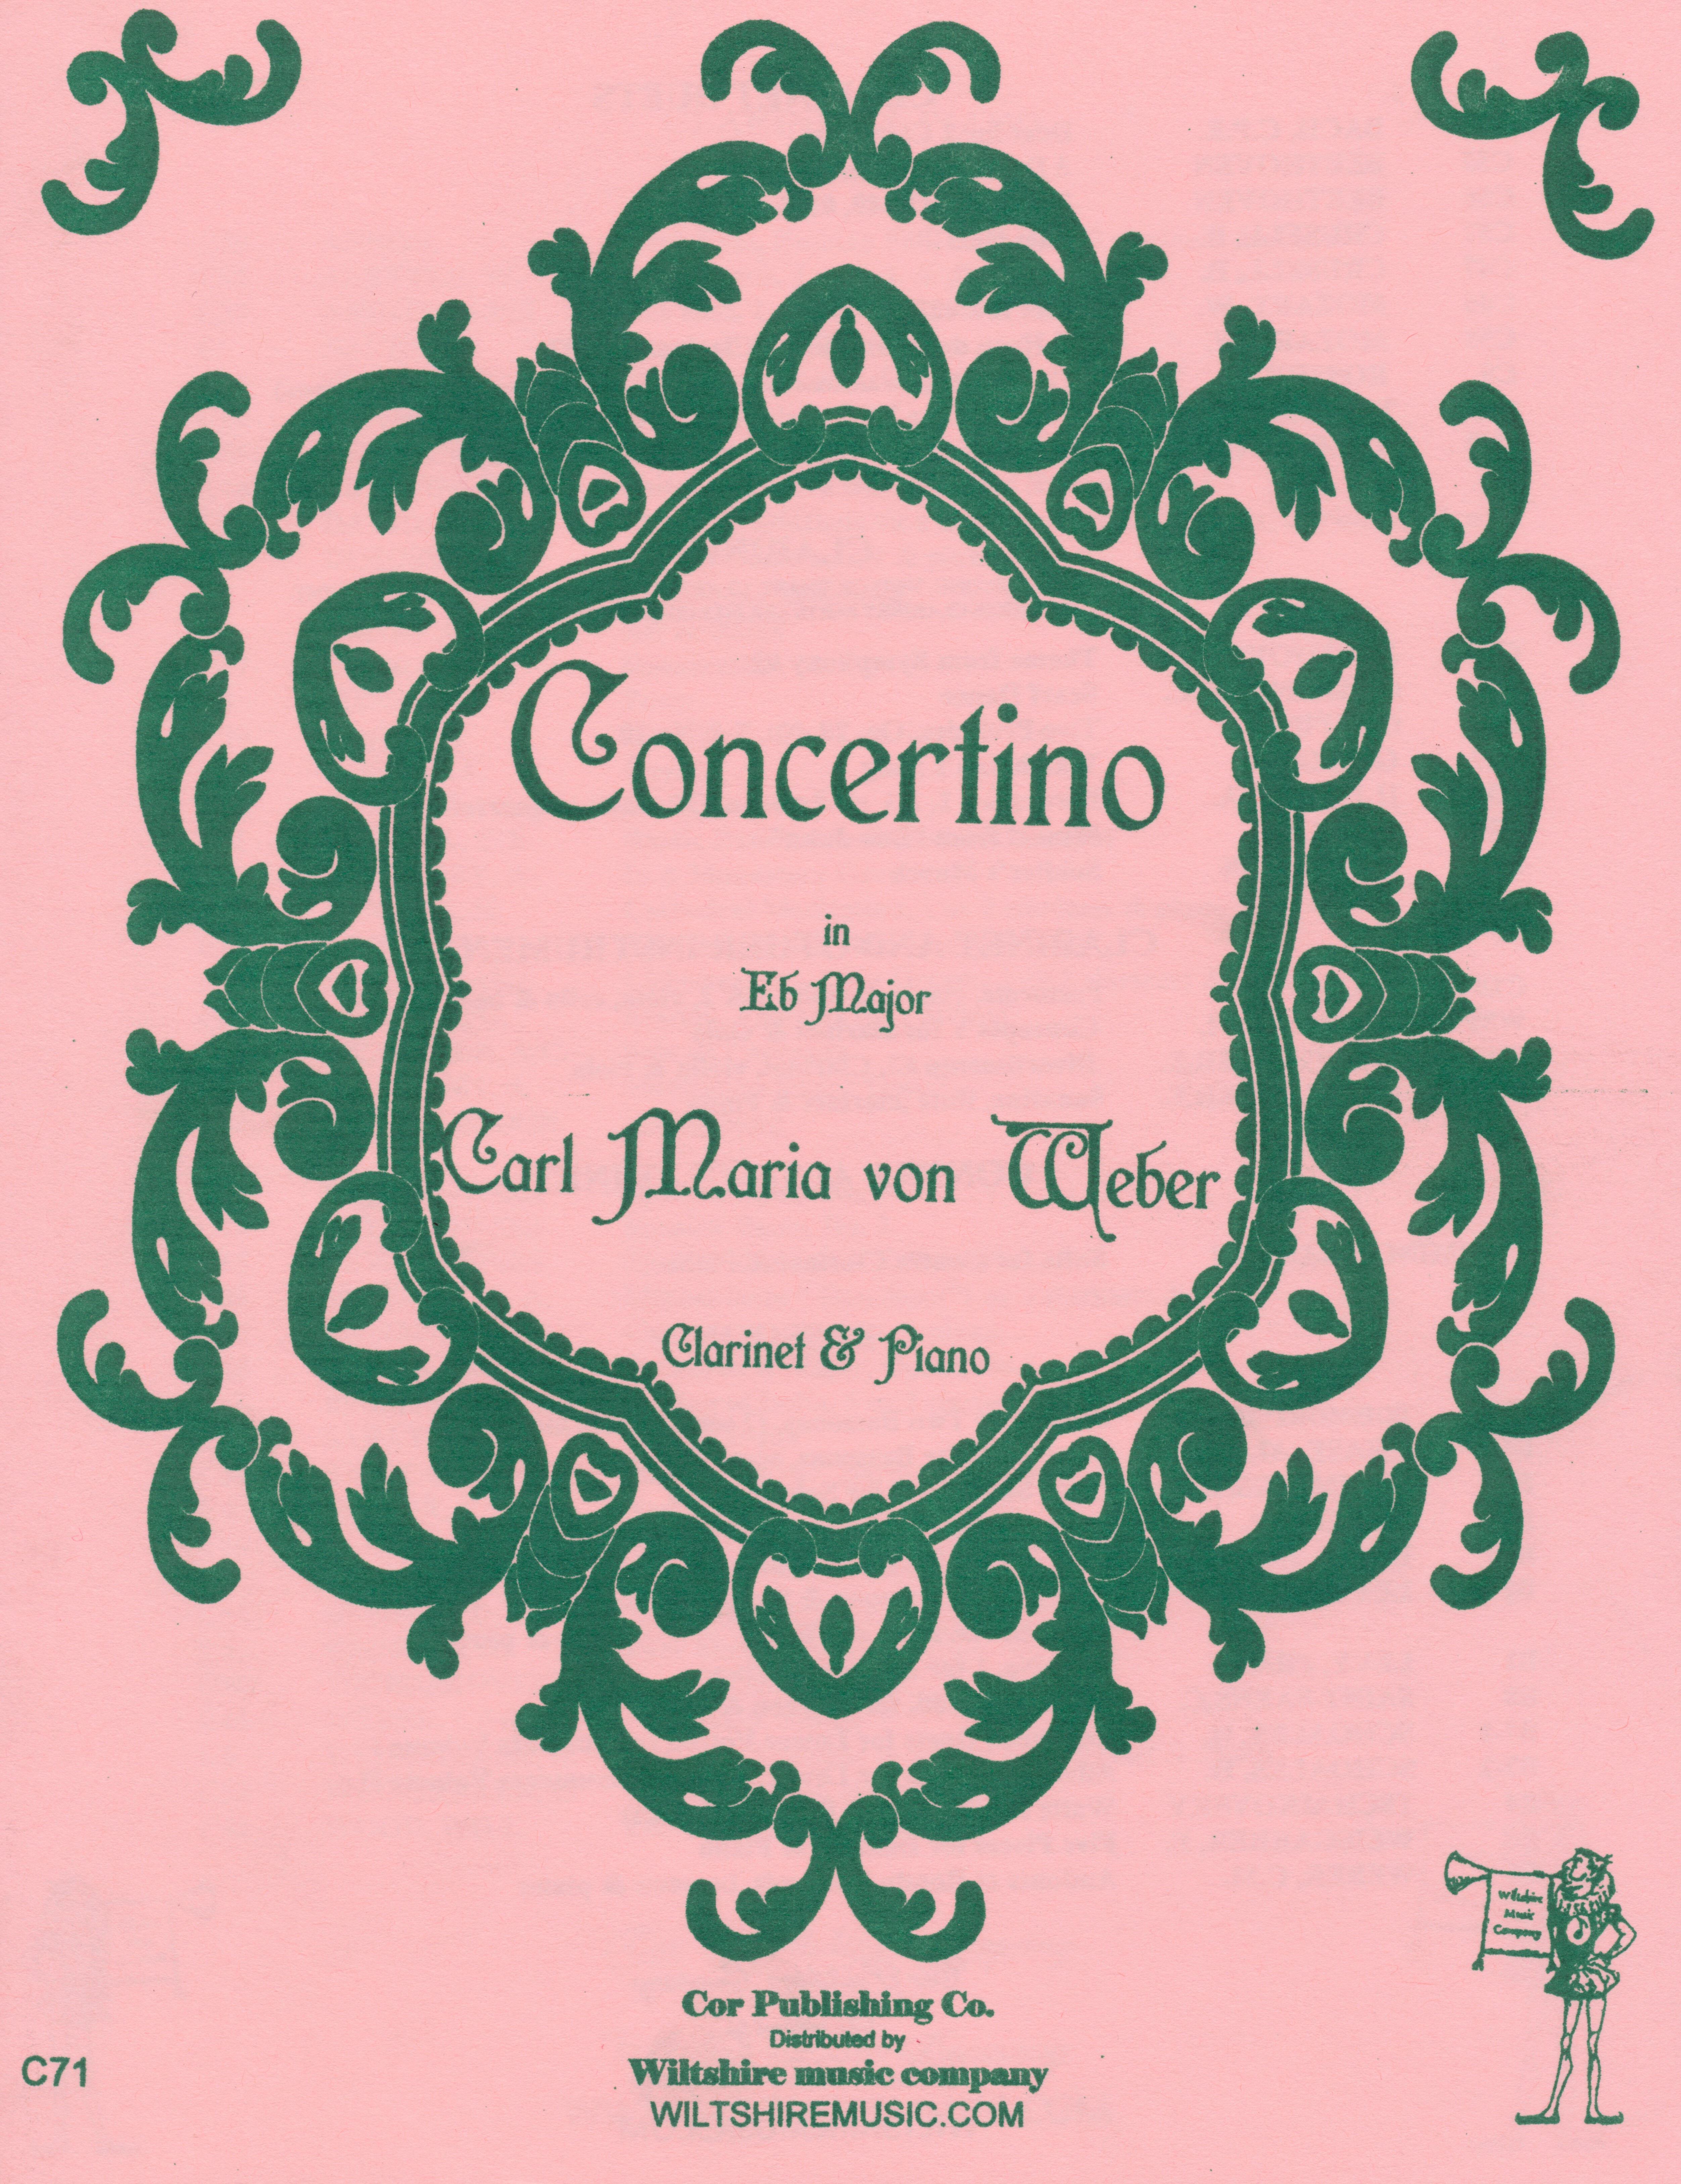 Concertino, Carl Maria von Weber, clarinet & piano